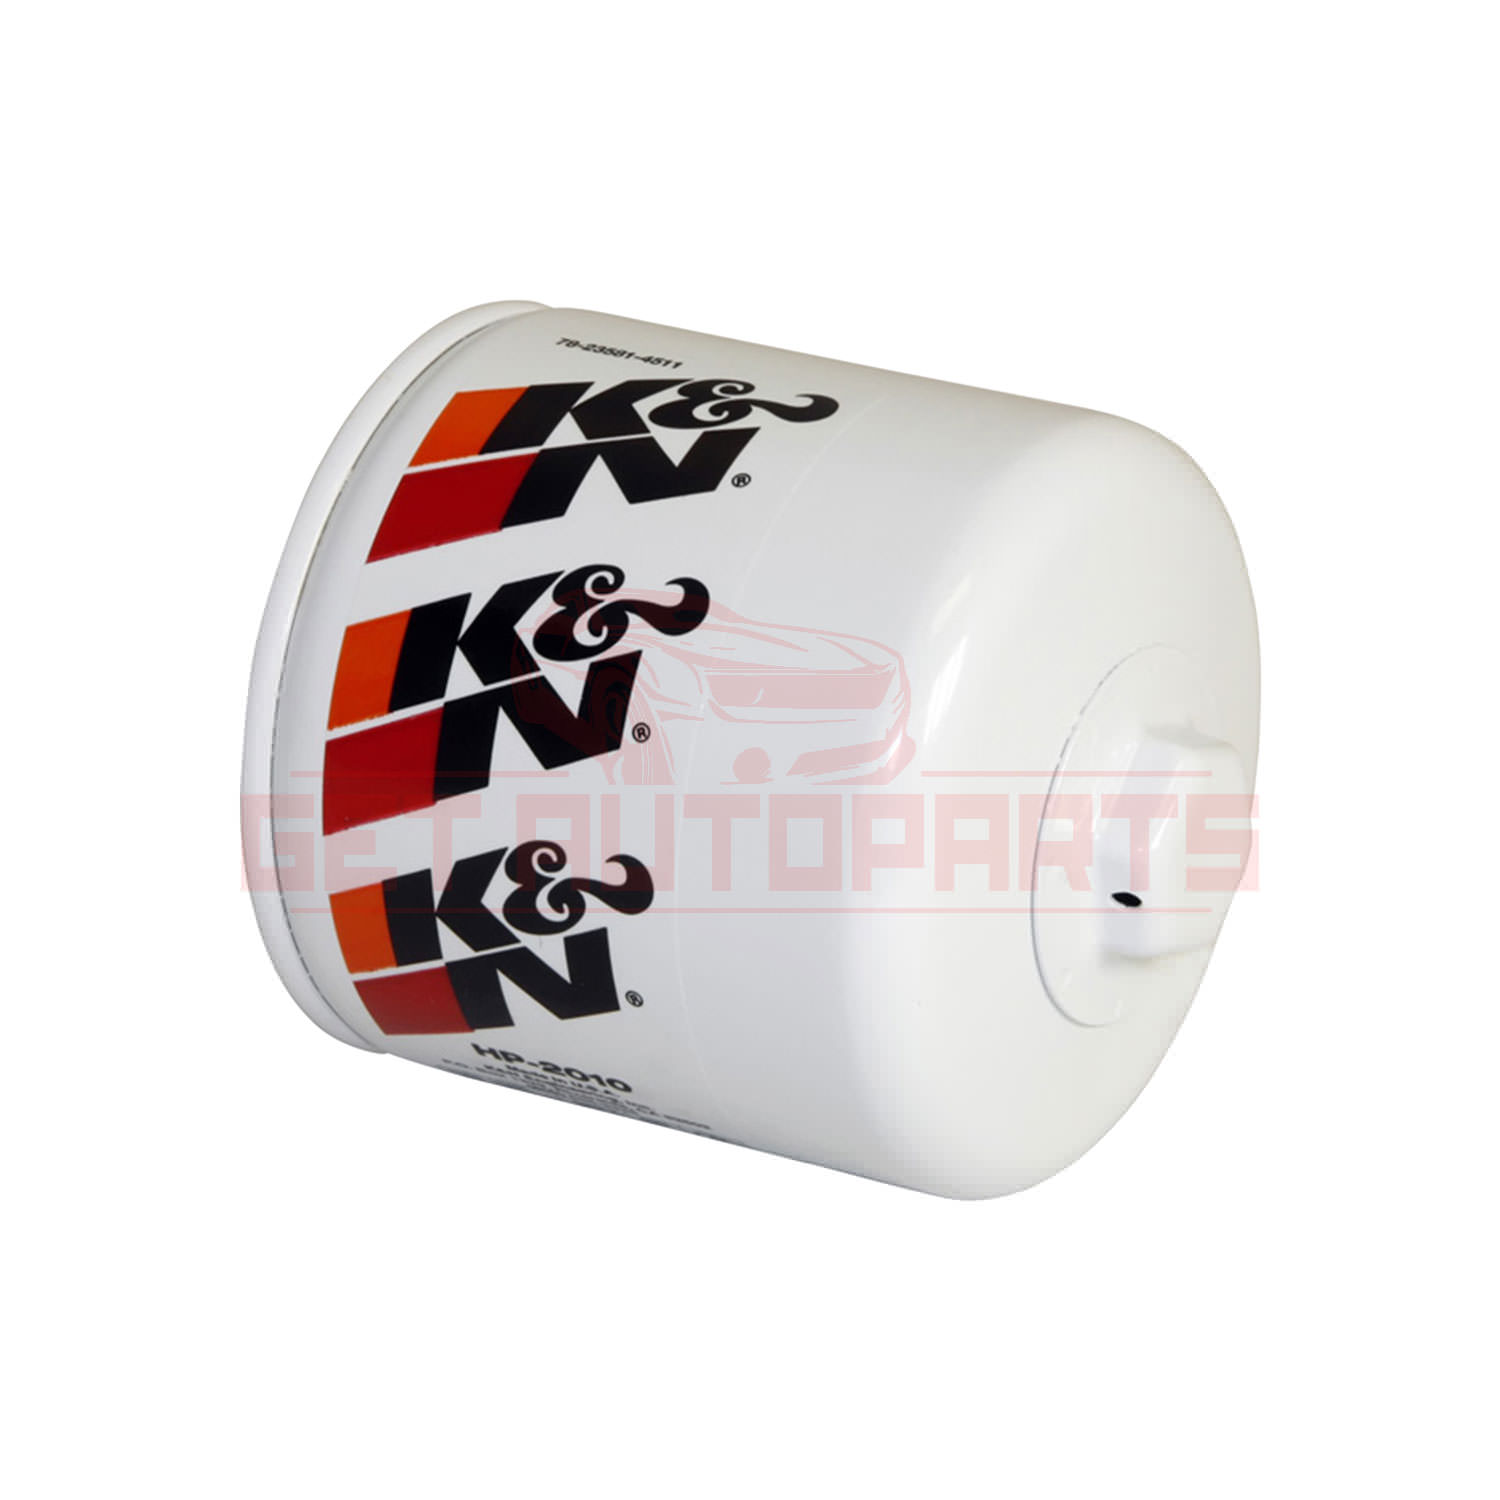 K&N Oil Filter for Ford E-150 2003-14